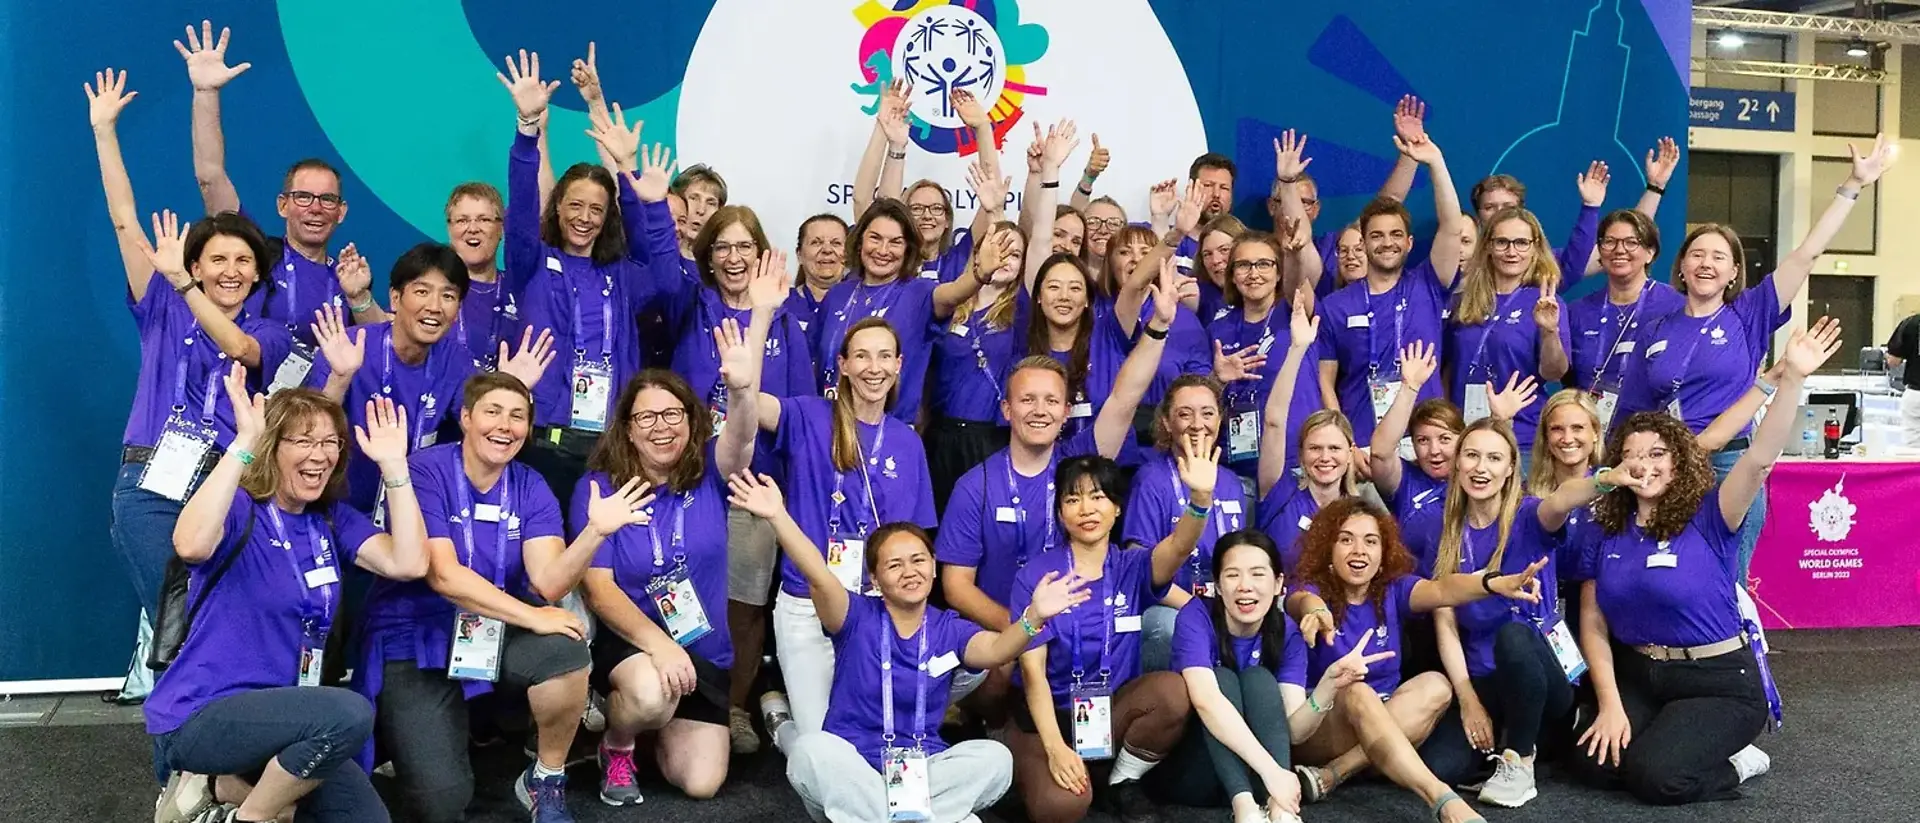 60 ehrenamtliche Helfer:innen von Henkel jubeln bei den Special Olympics auf einem Gruppenfoto.